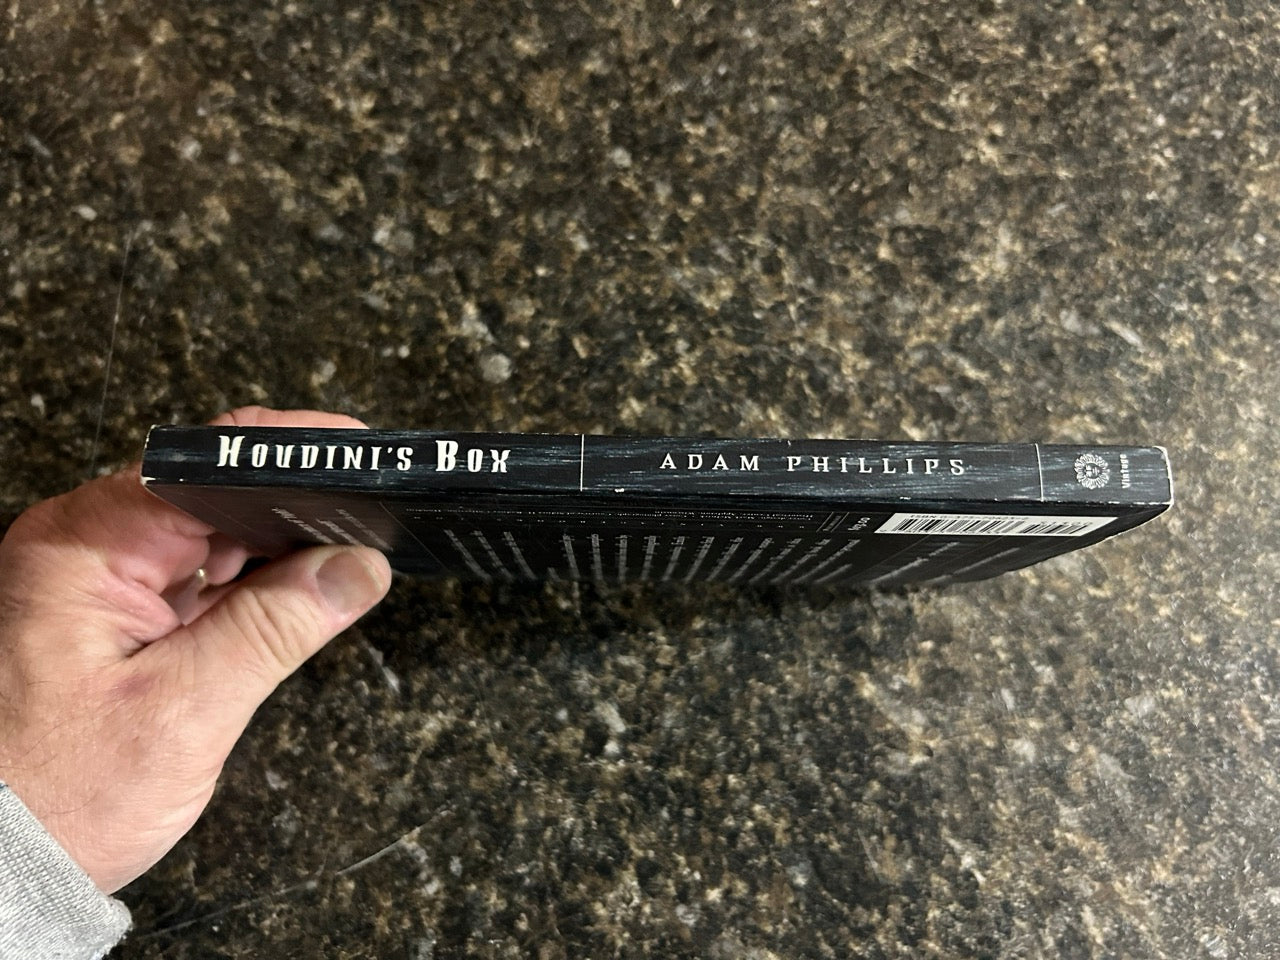 Houdini's Box - Adam Phillips